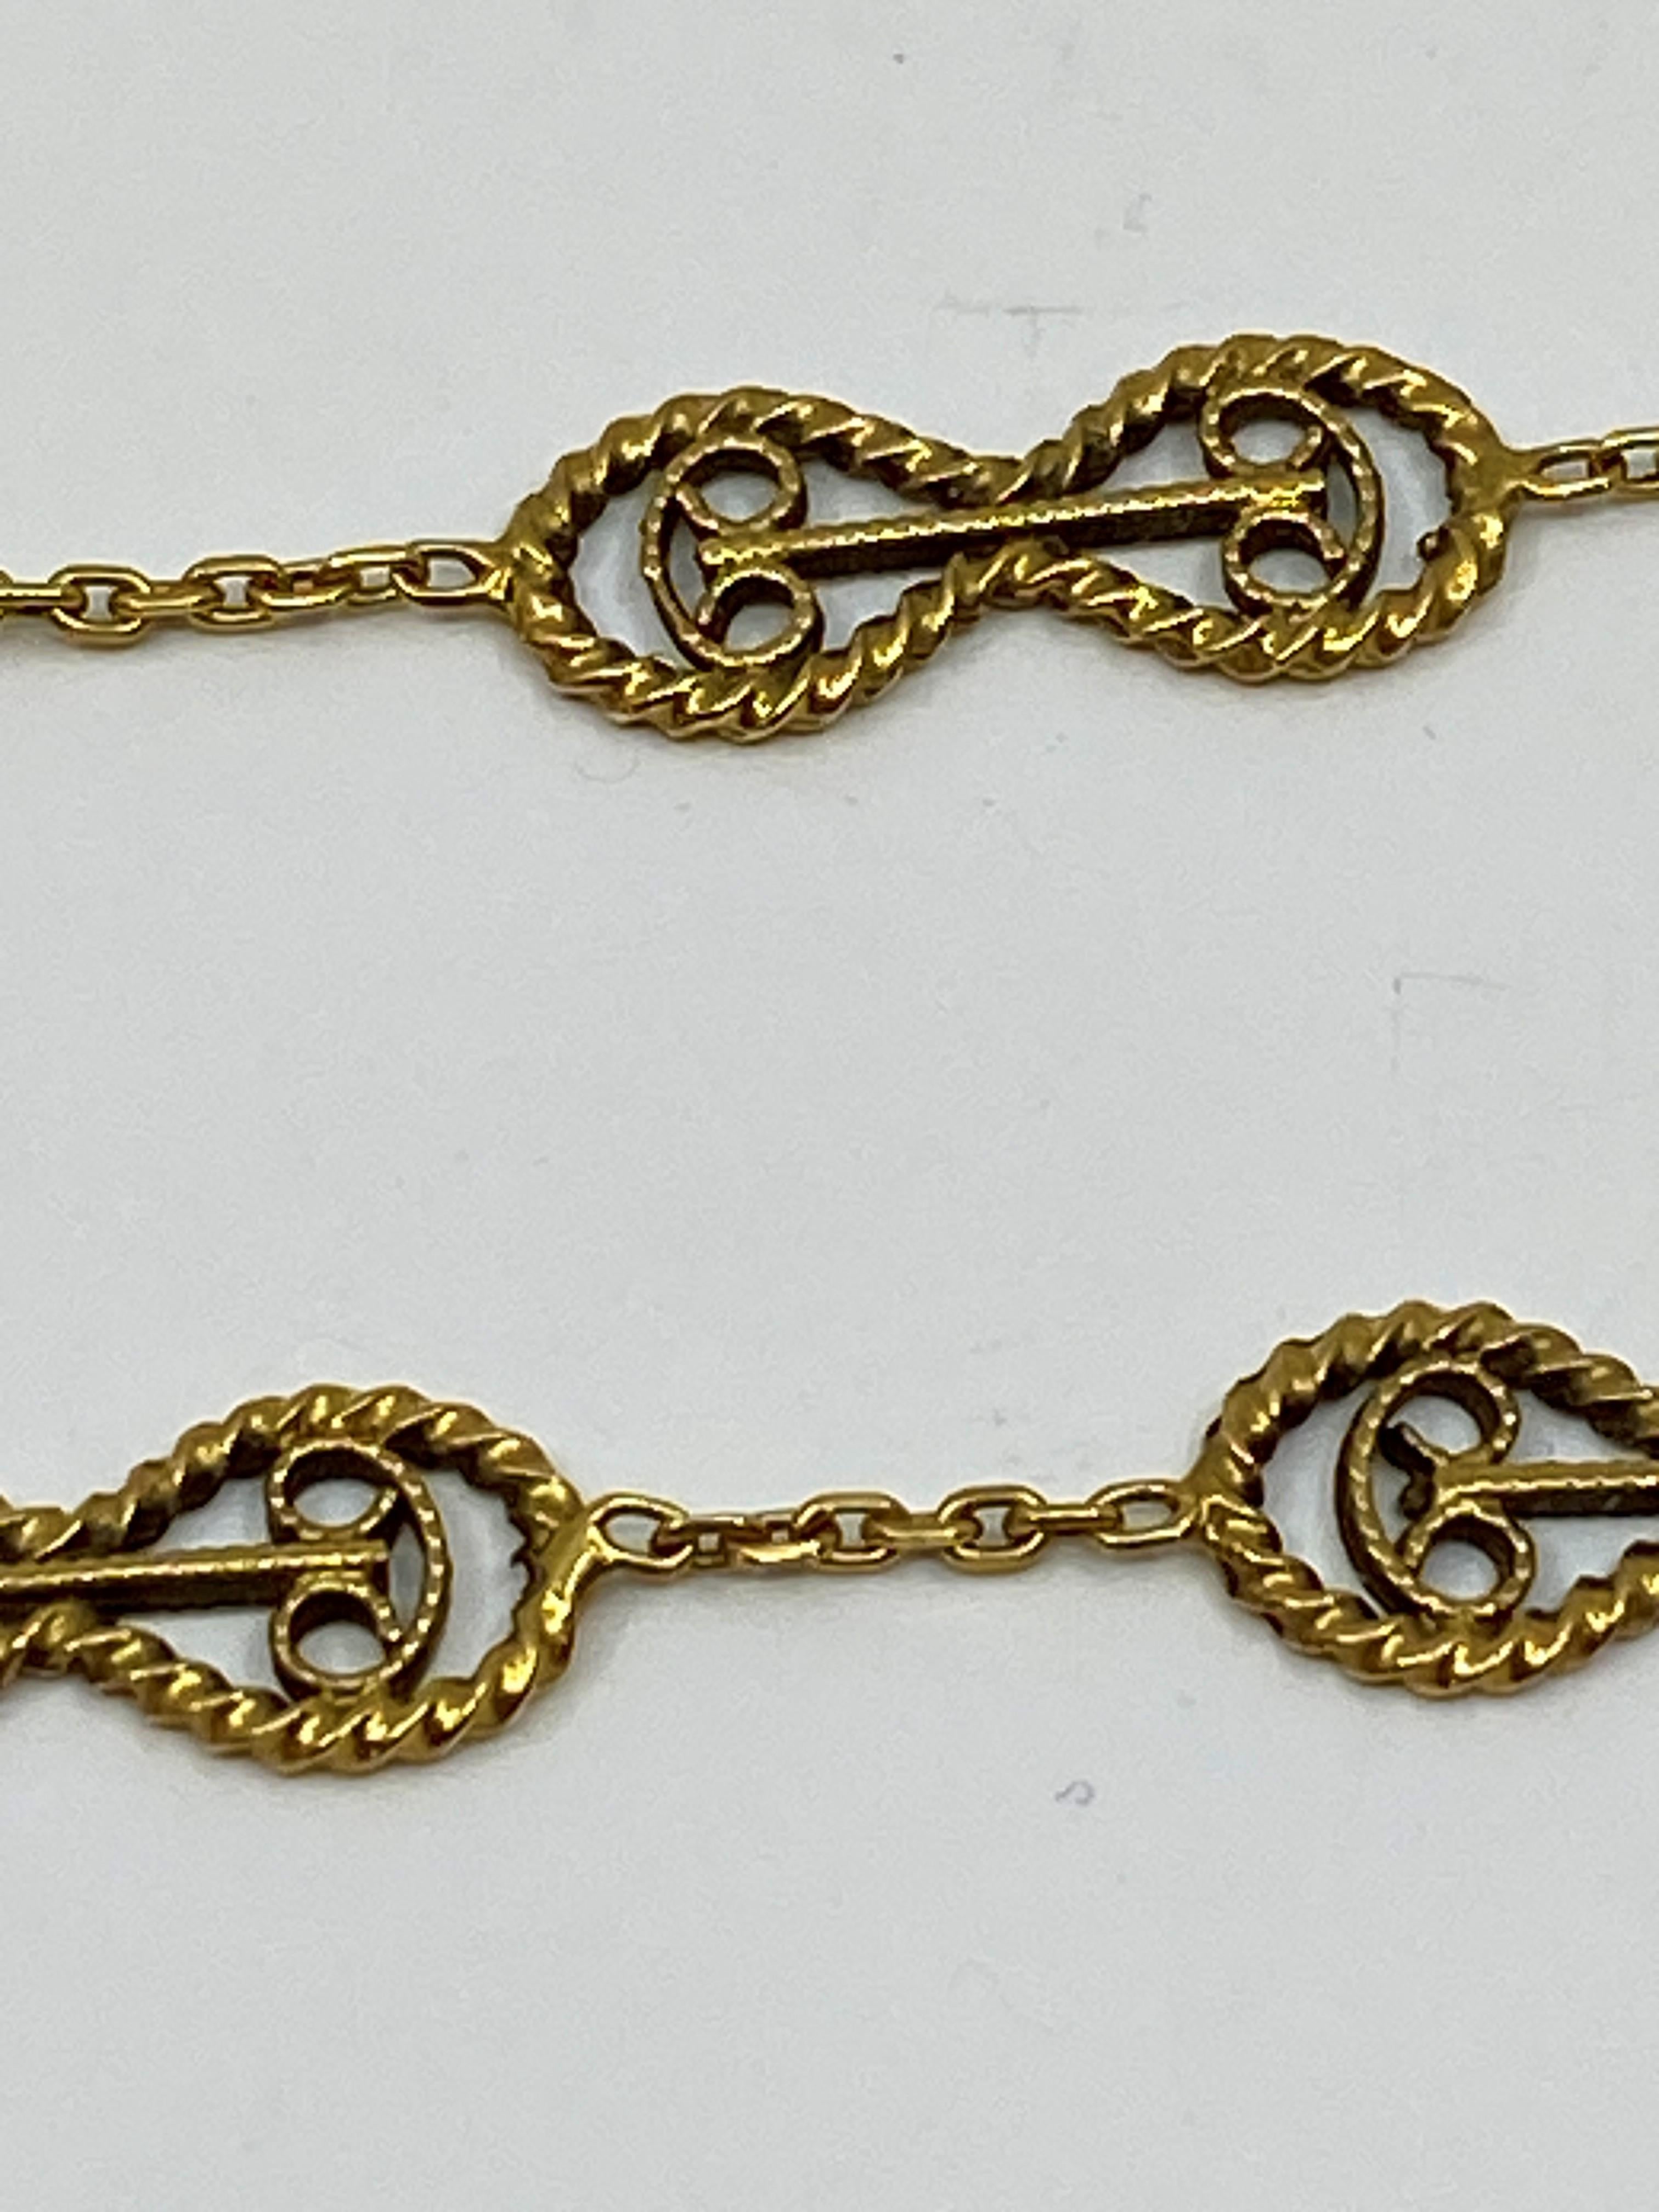 Ravissante chaîne en or 18 carats, elle est constituée de mailles en forme de huit décorées de motifs en filigrane. Ces motifs sont reliés entre eux par une chaîne forçat. Cette chaîne est terminée par un fermoir à ressort. La rareté du modèle de ce